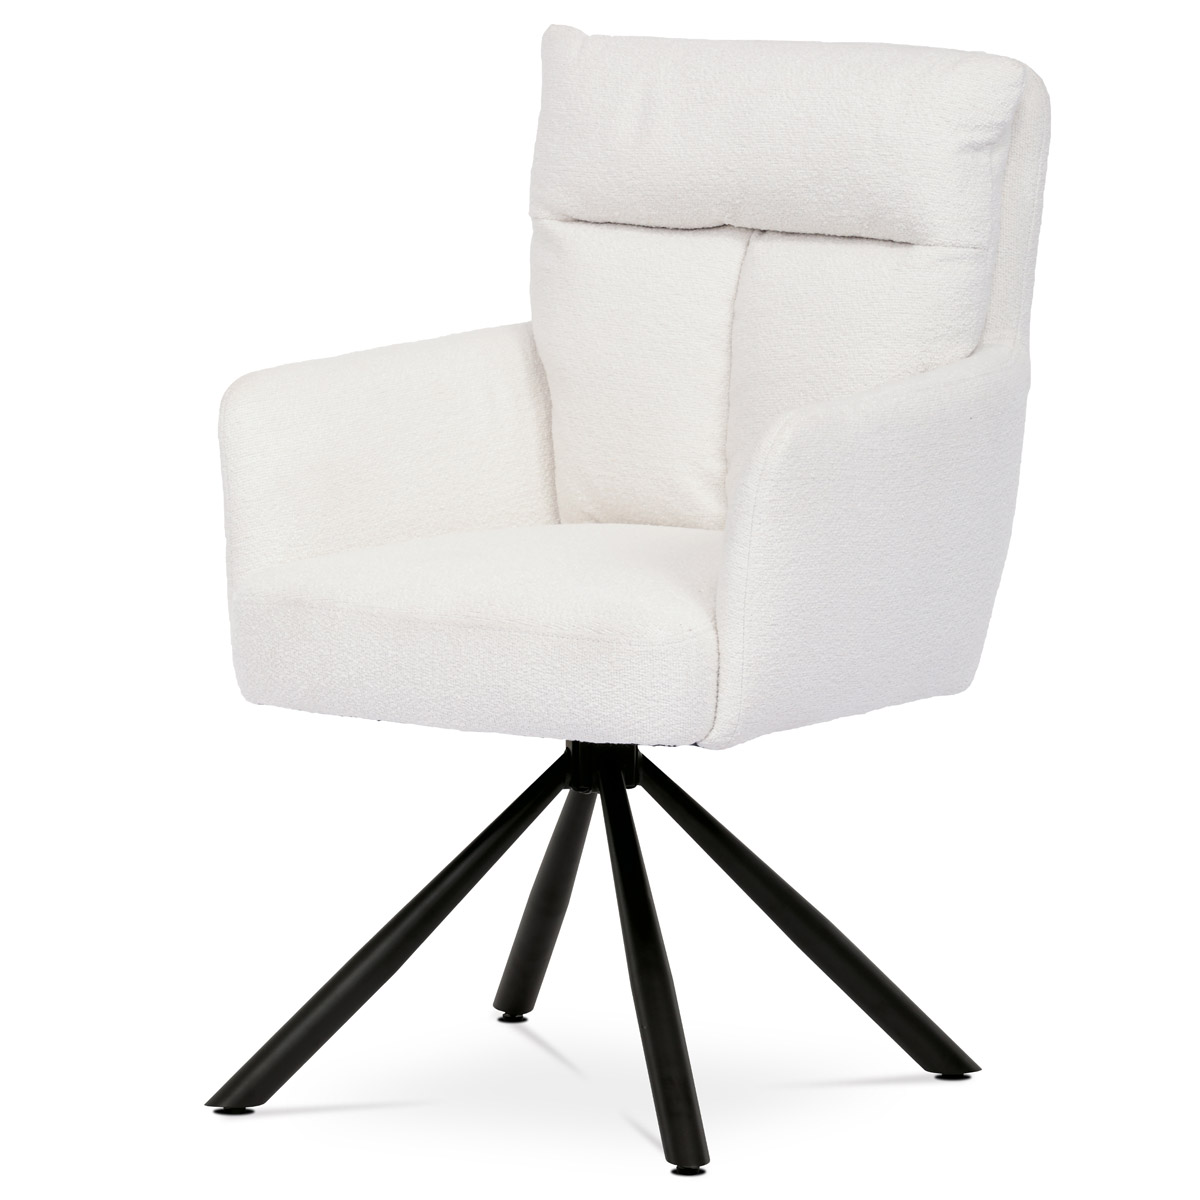 Jídelní židle, bílá látka bouclé, otočná s vratným mechanismem - funkce reset, černé kovové nohy